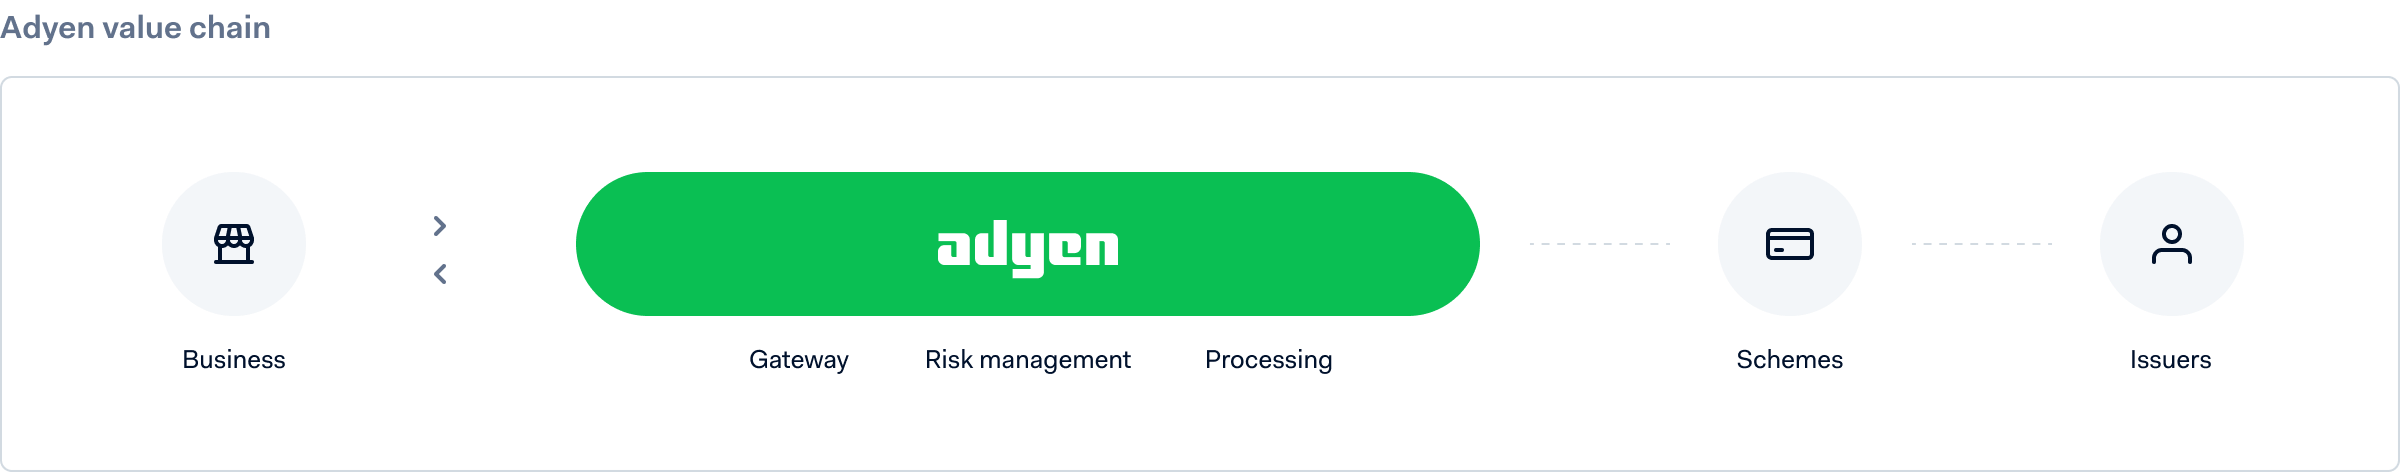 Adyen's payment platform